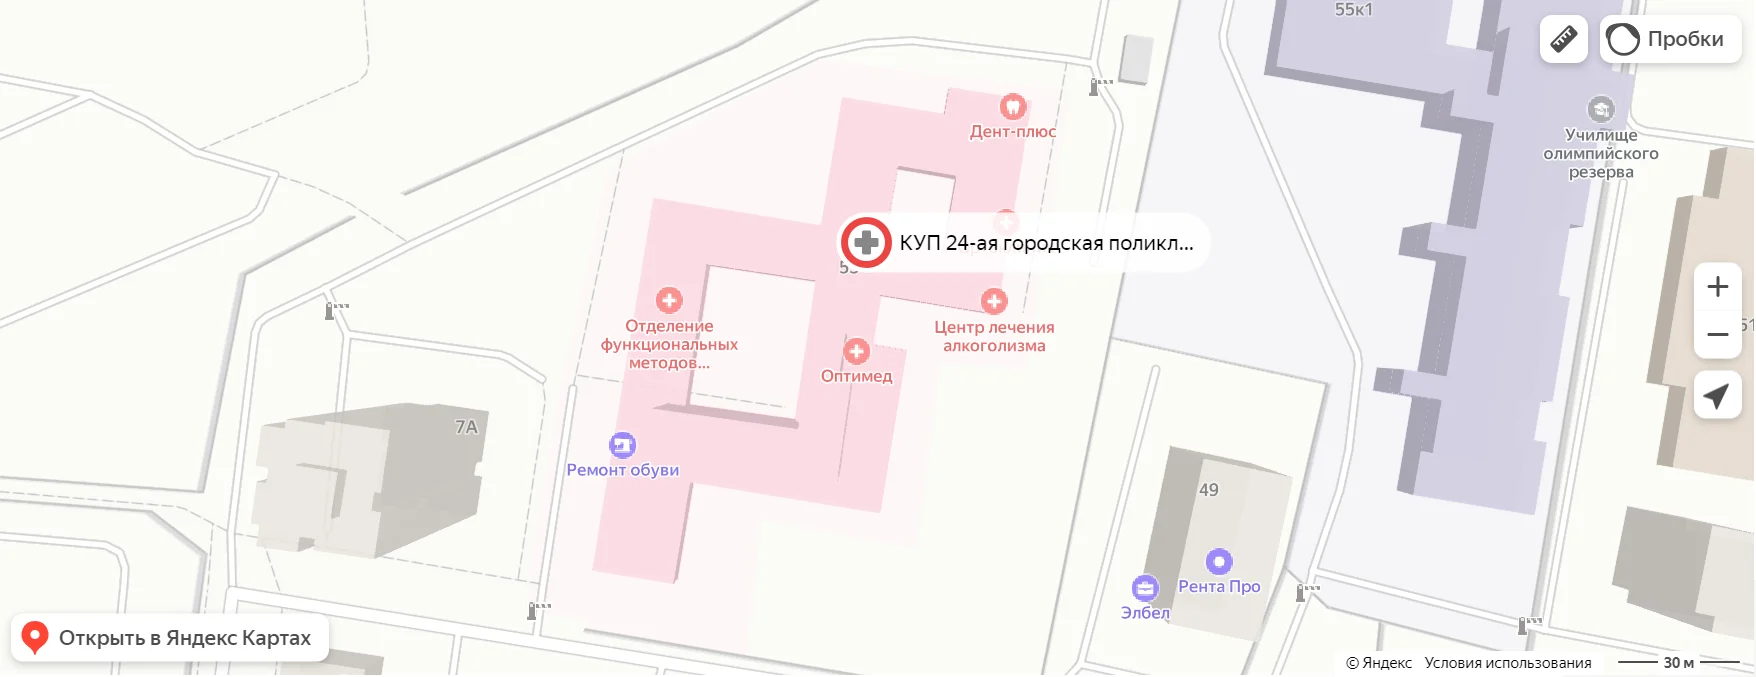 Карта расположения КУП "24-ая городская поликлиника спецмедосмотров"